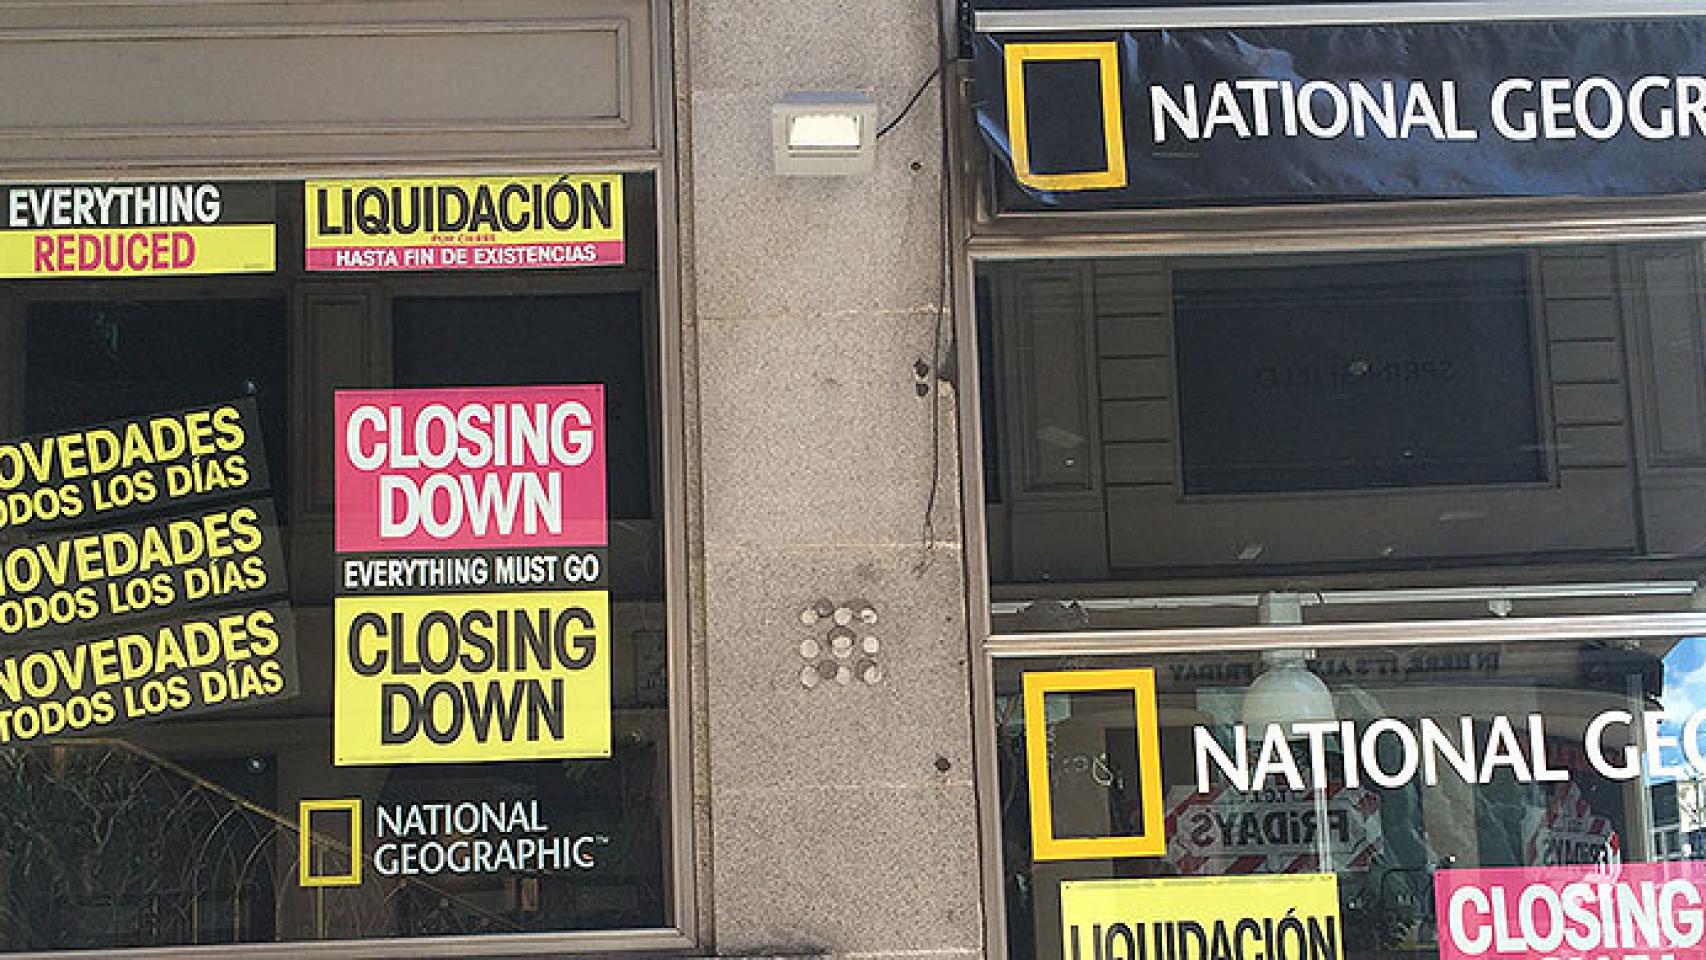 La tienda de National Geographic en Madrid también echa el cierre